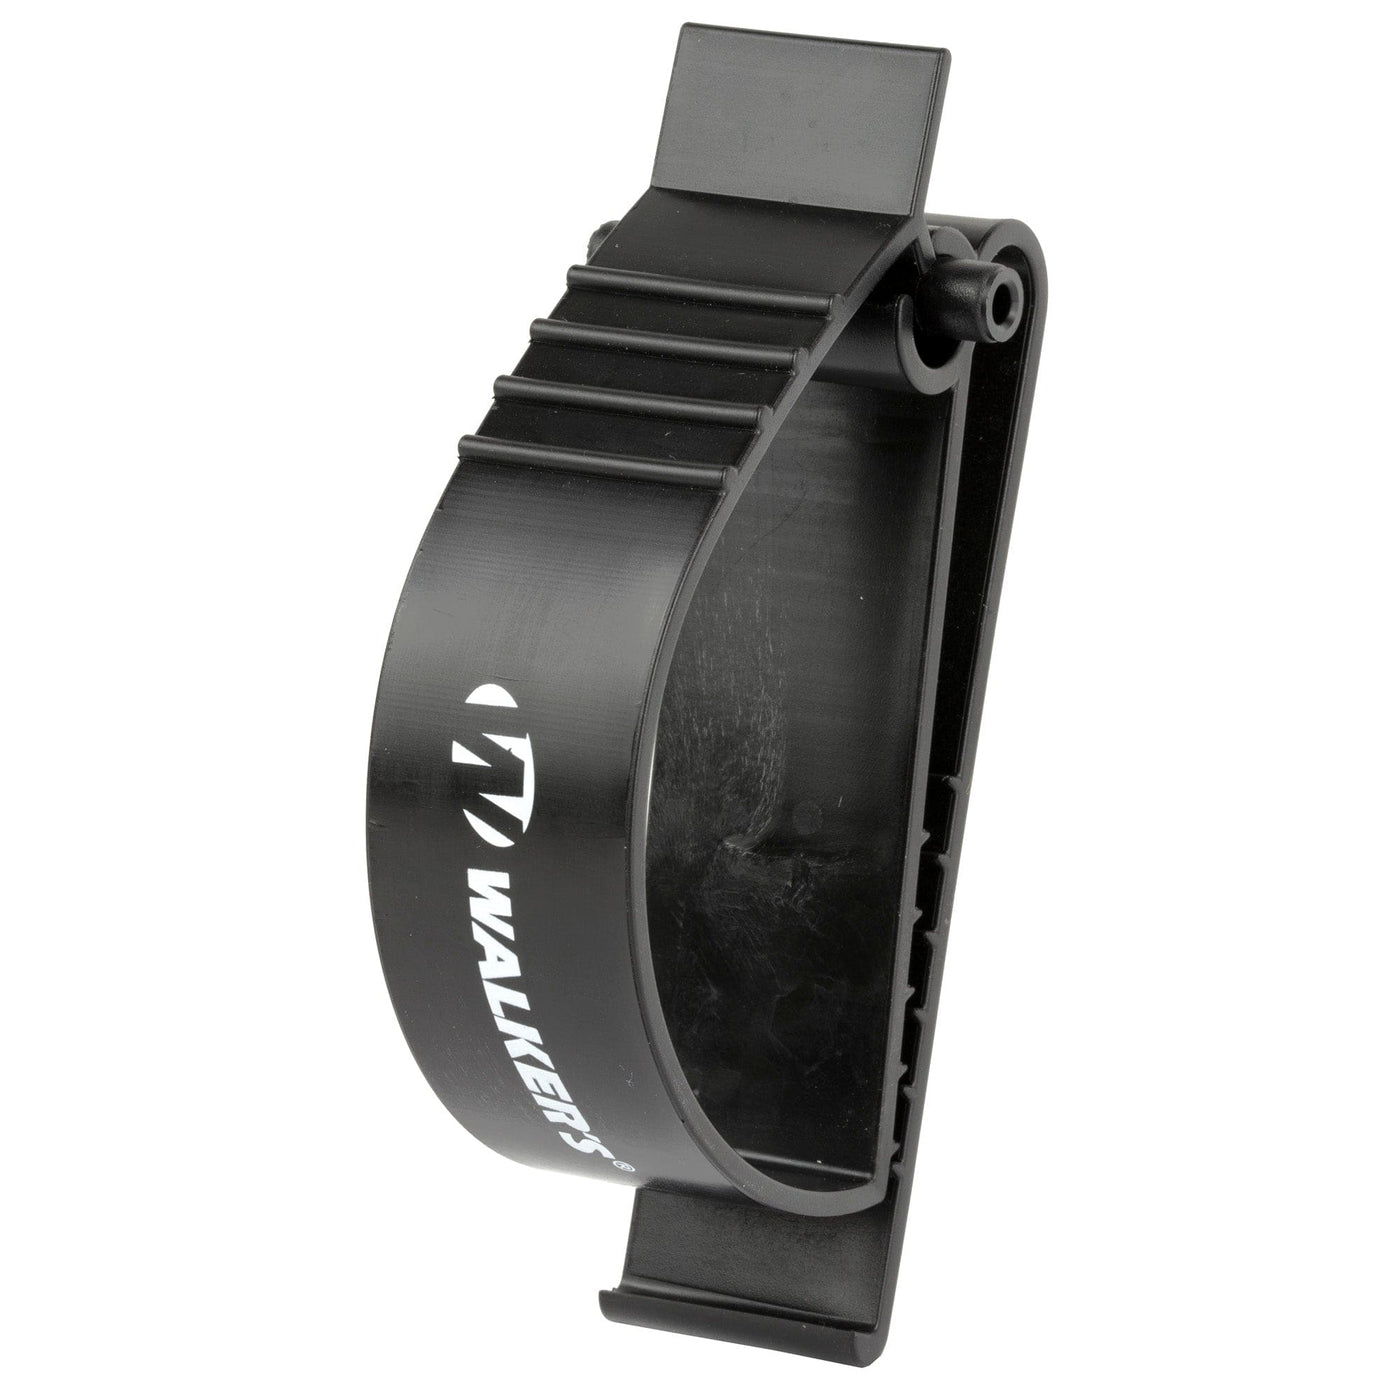 Walker's Walker's Belt Clip Holder Safety/Protection